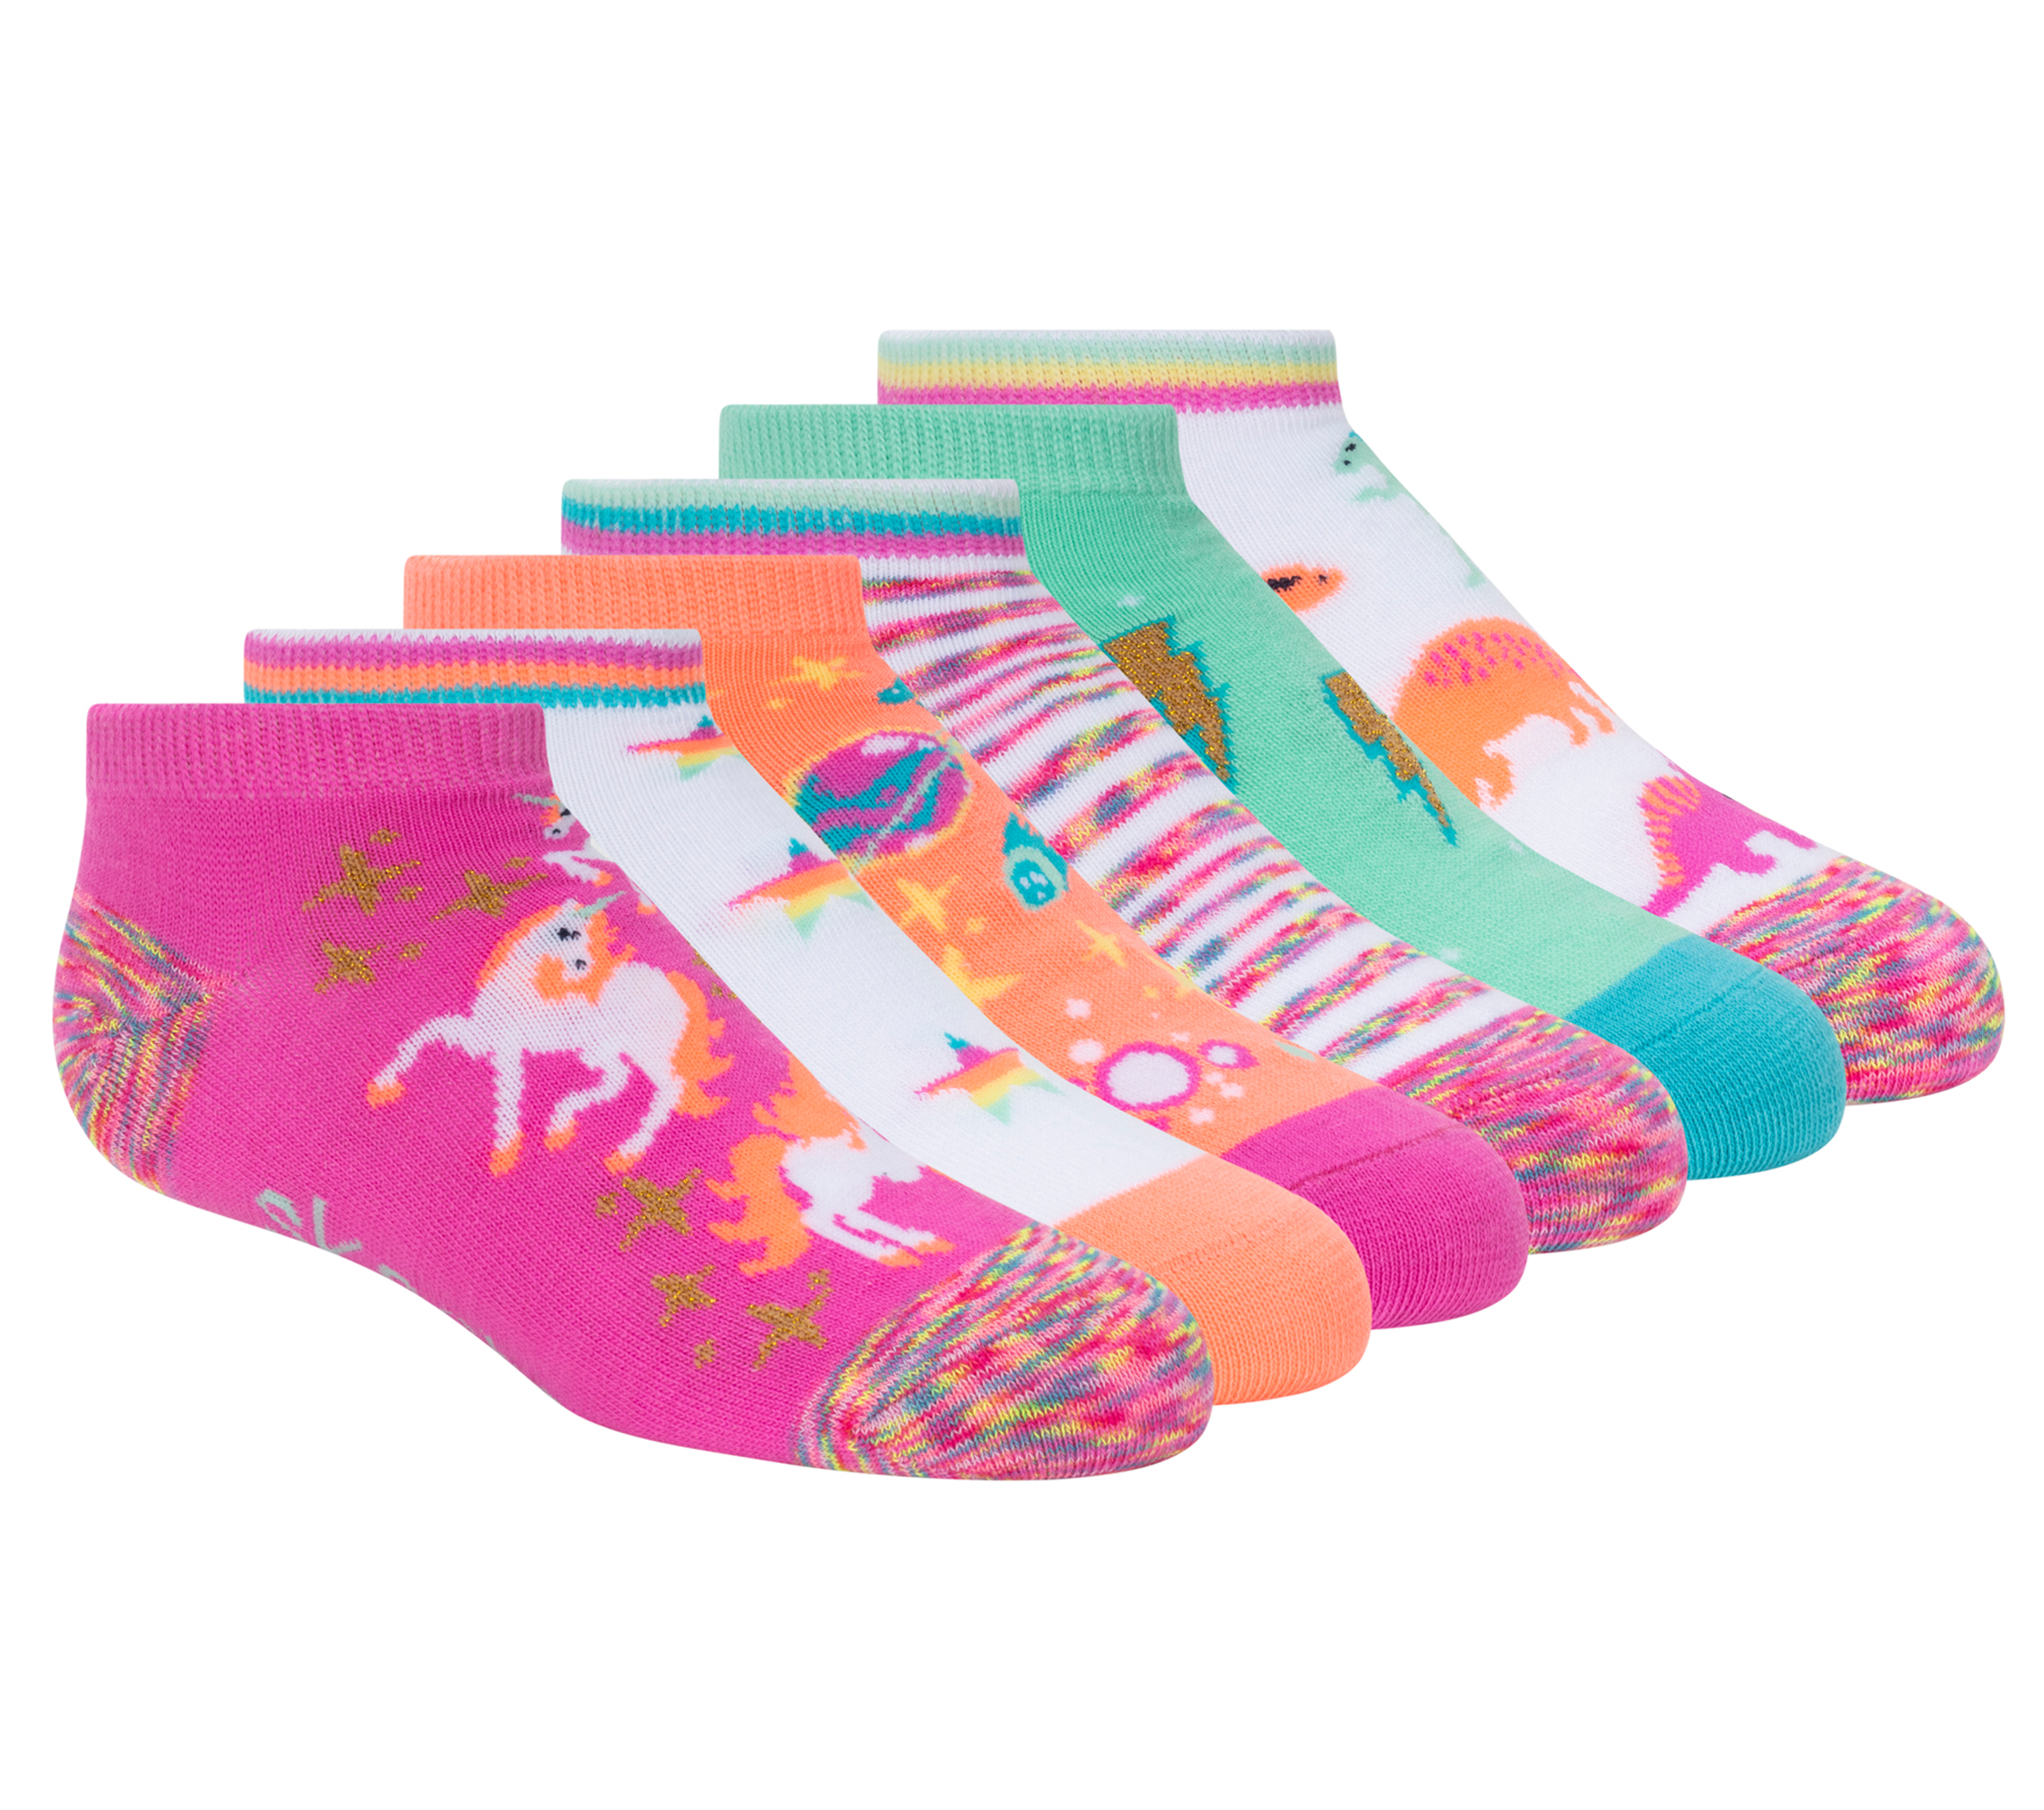 SOCK SNOB 6 Pair Multipack Pastel Novelty Girls Unicorn Socks Birthday Christmas Gift